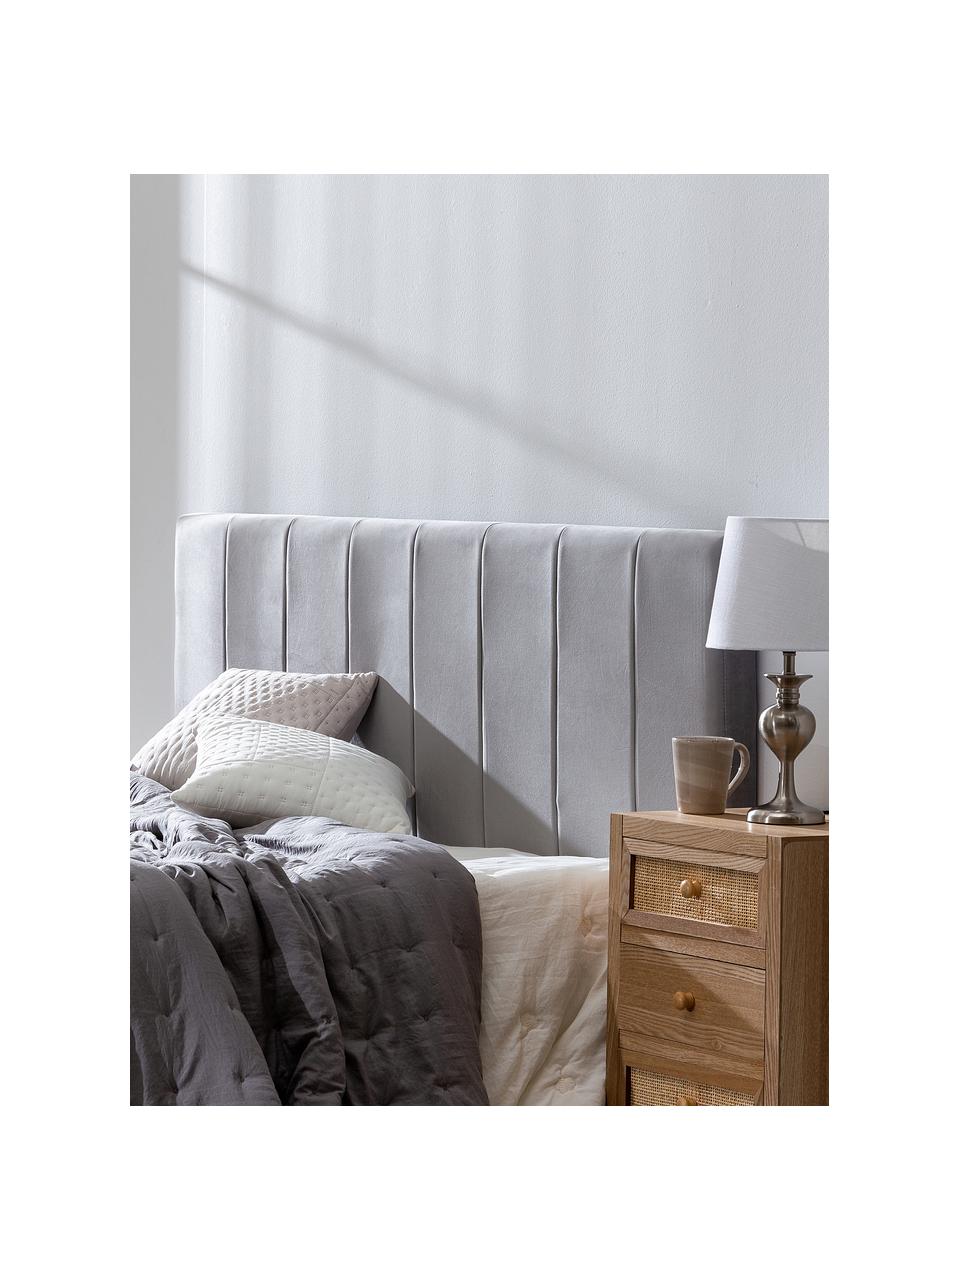 Zagłówek do łóżka tapicerowany z aksamitu Adrio, Tapicerka: 100% aksamit poliestrowy, Stelaż: drewno naturalne, metal, Szary aksamit, S 160 x W 64 cm